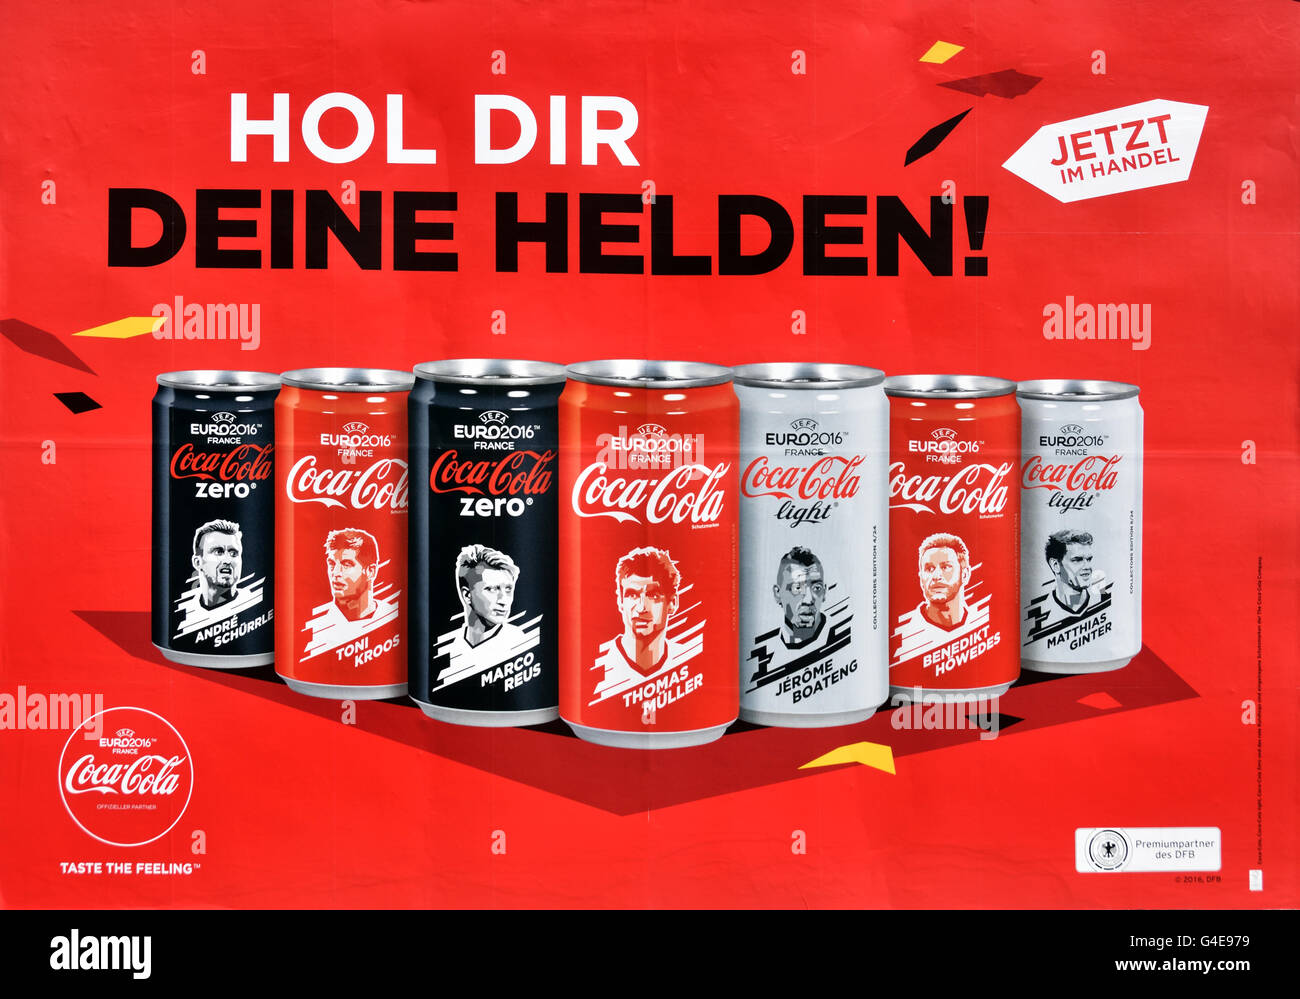 Hol Dir Deine Helden-Get dein Held Coca Cola Zero European Football Championship 2016 oder UEFA Berlin Deutschland Stockfoto